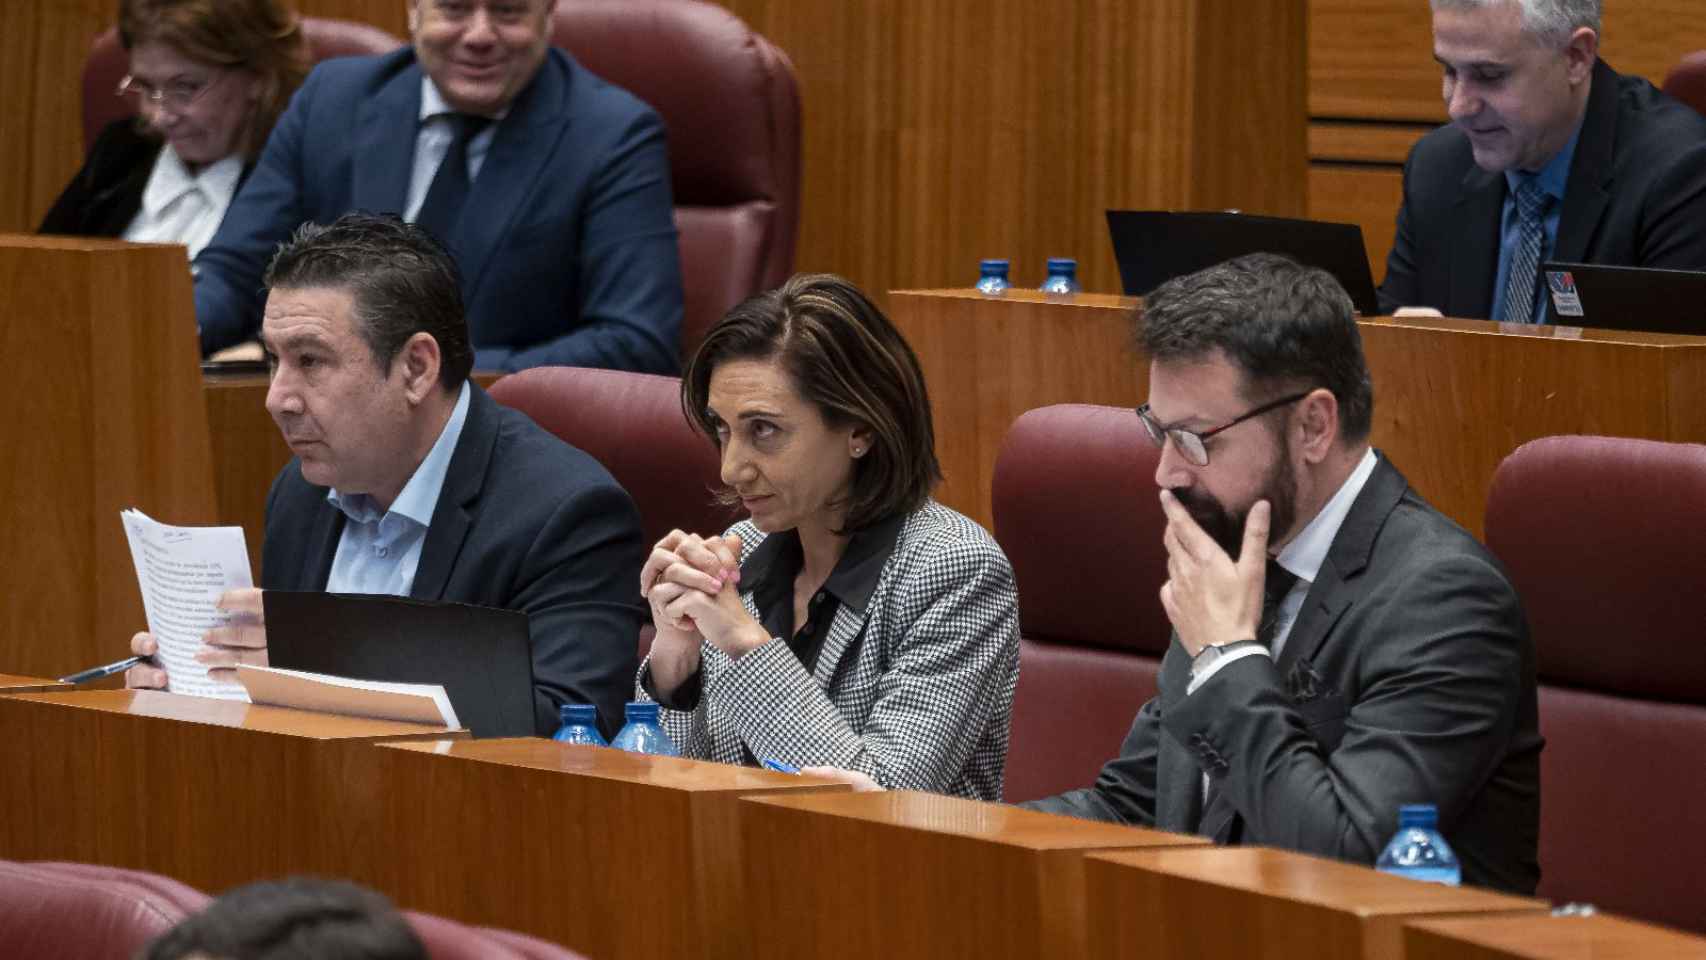 Los tres procuradores de UPL en las Cortes de Castilla y León